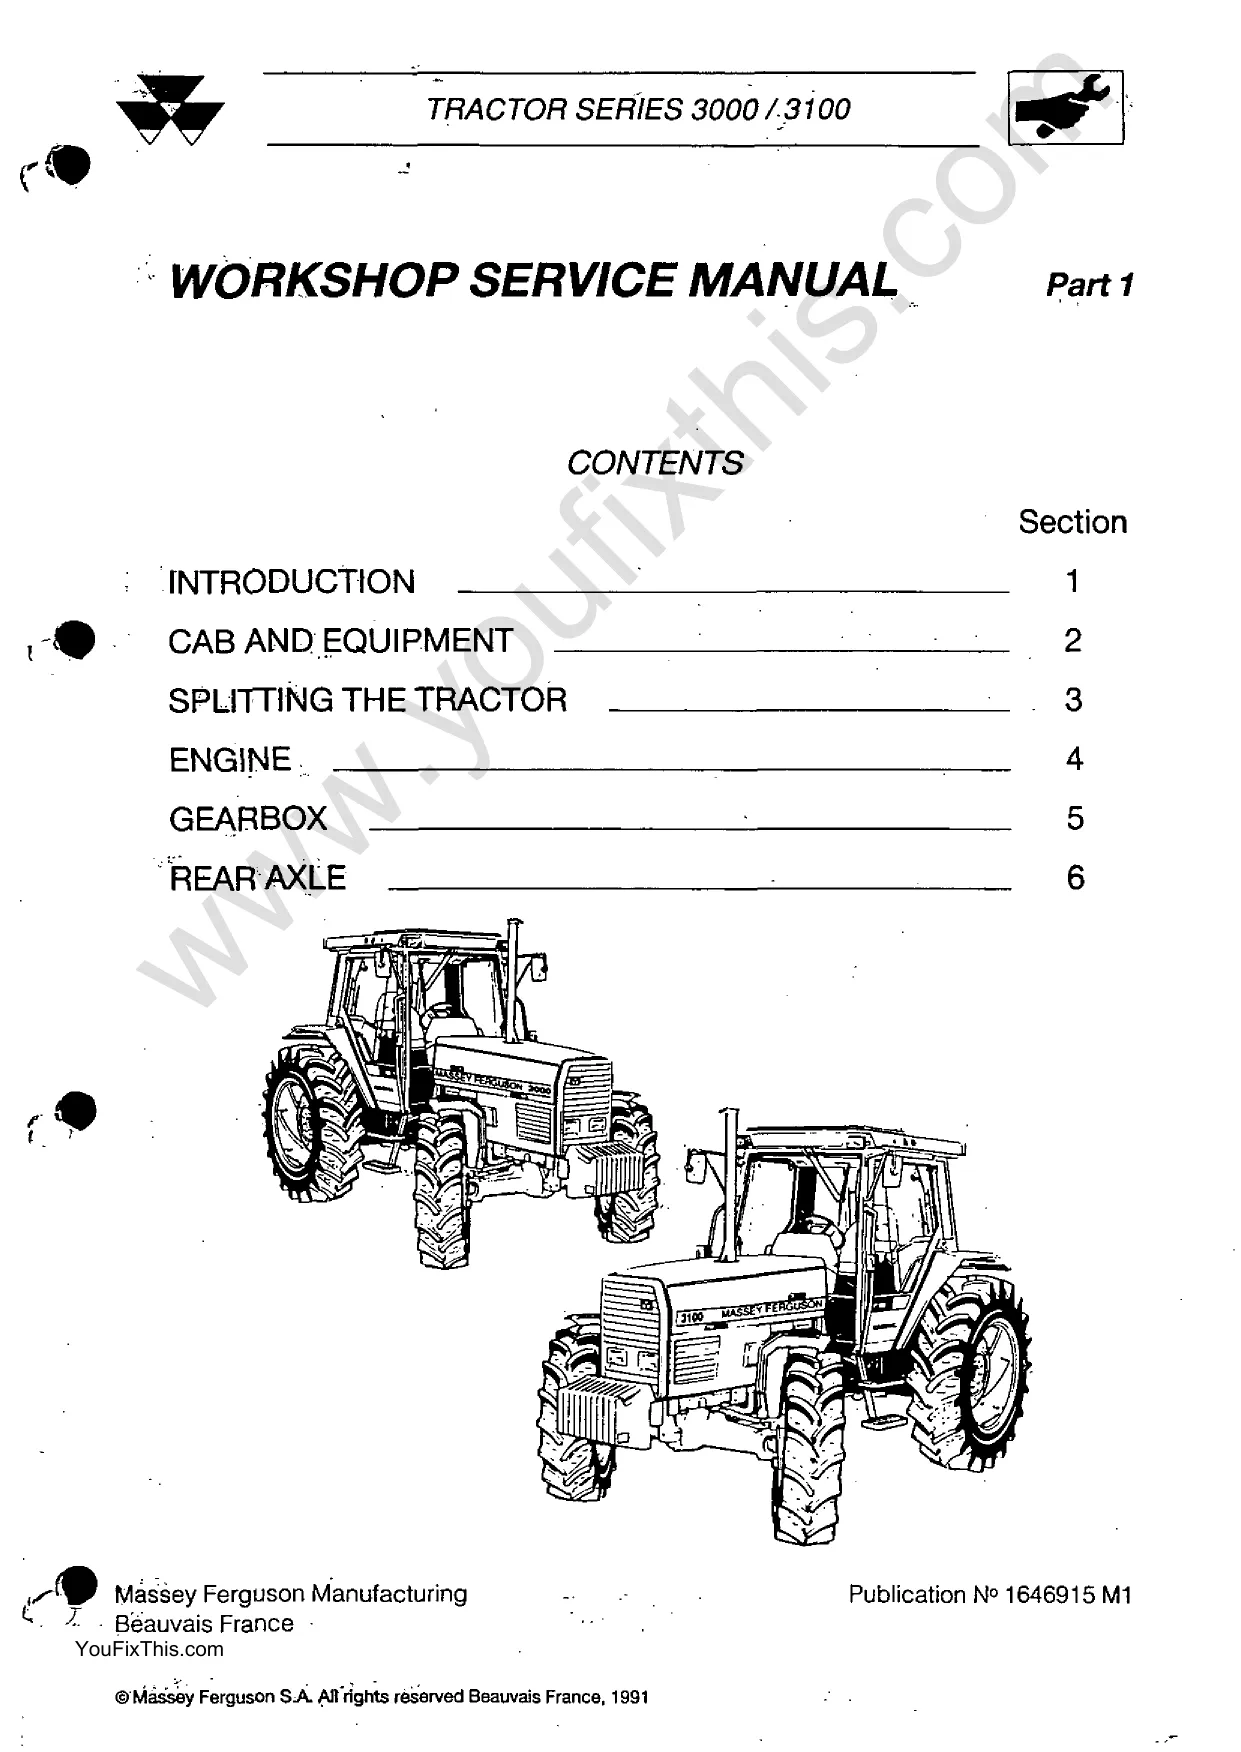 Massey Ferguson 3050, 3060, 3065, 3070, 3080, 3095, 3100, 3115, 3120, 3125, 3140 Row-Crop tractor repair manual image